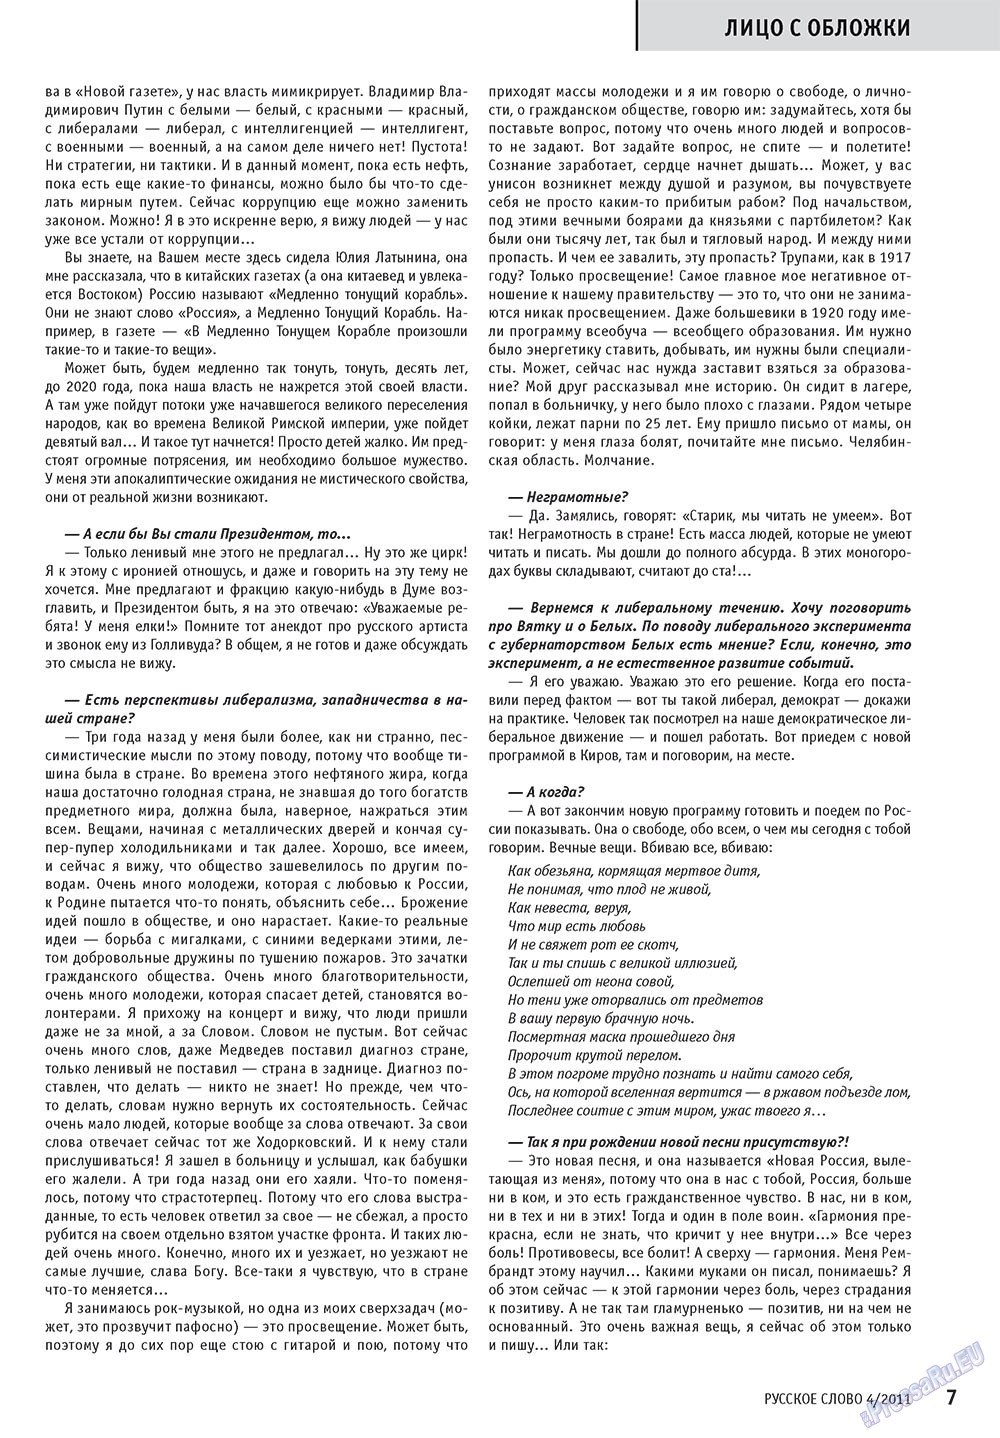 Русское слово, журнал. 2011 №4 стр.9